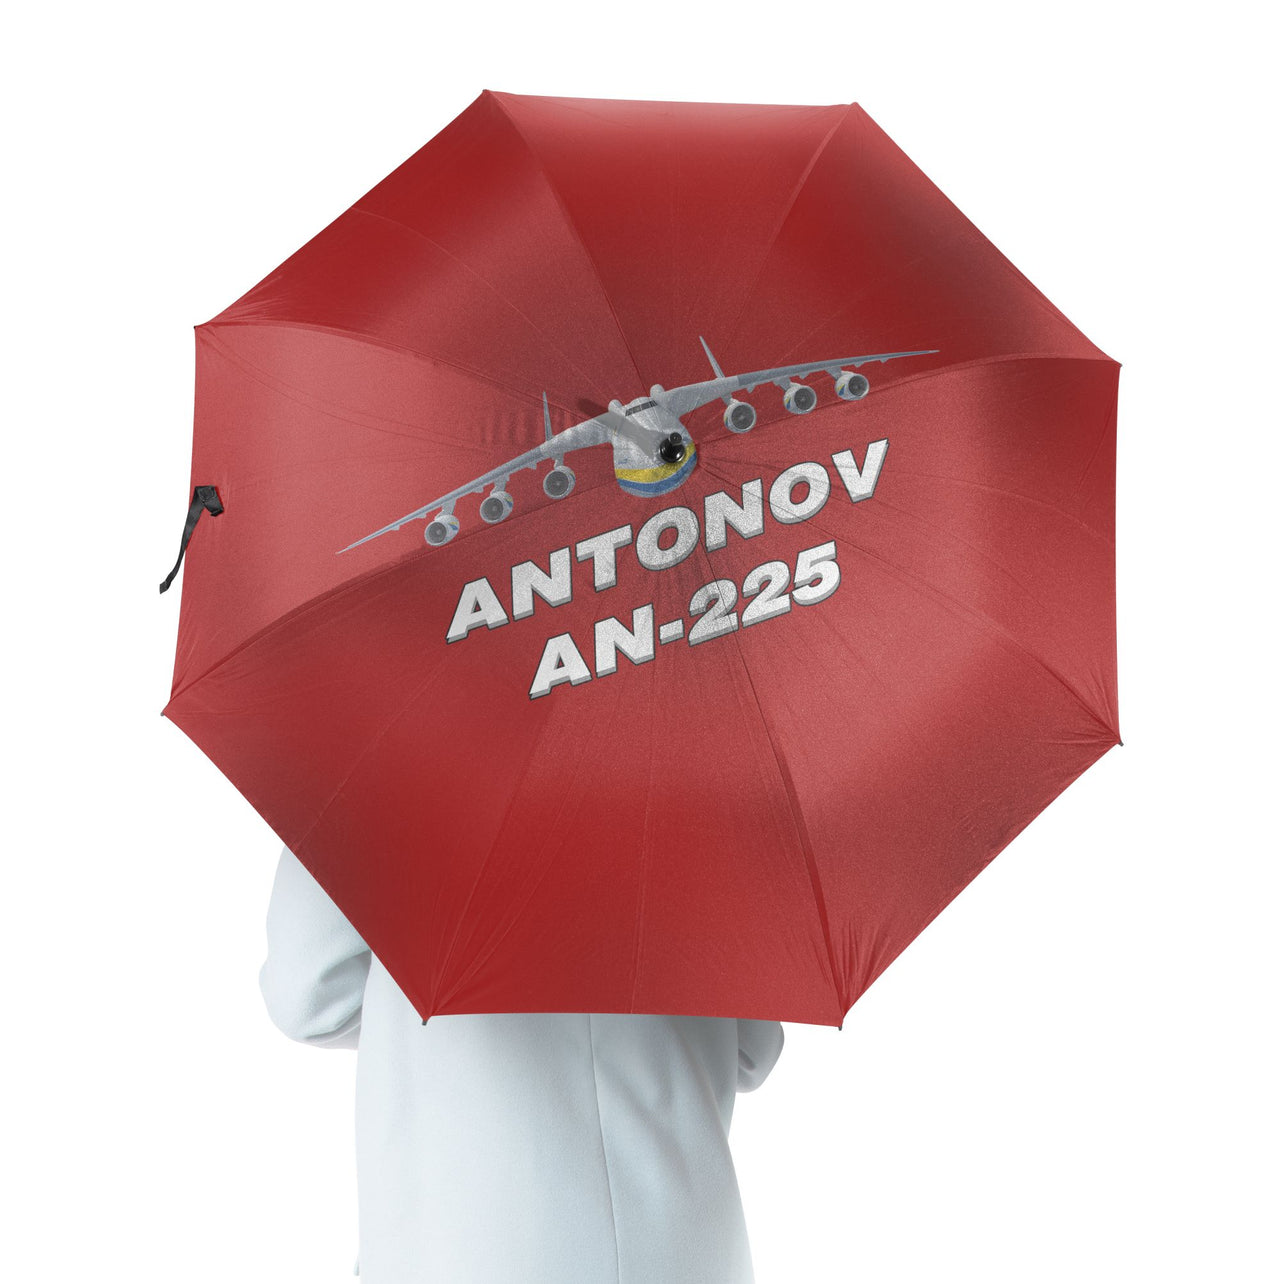 Antonov AN-225 (16) Designed Umbrella